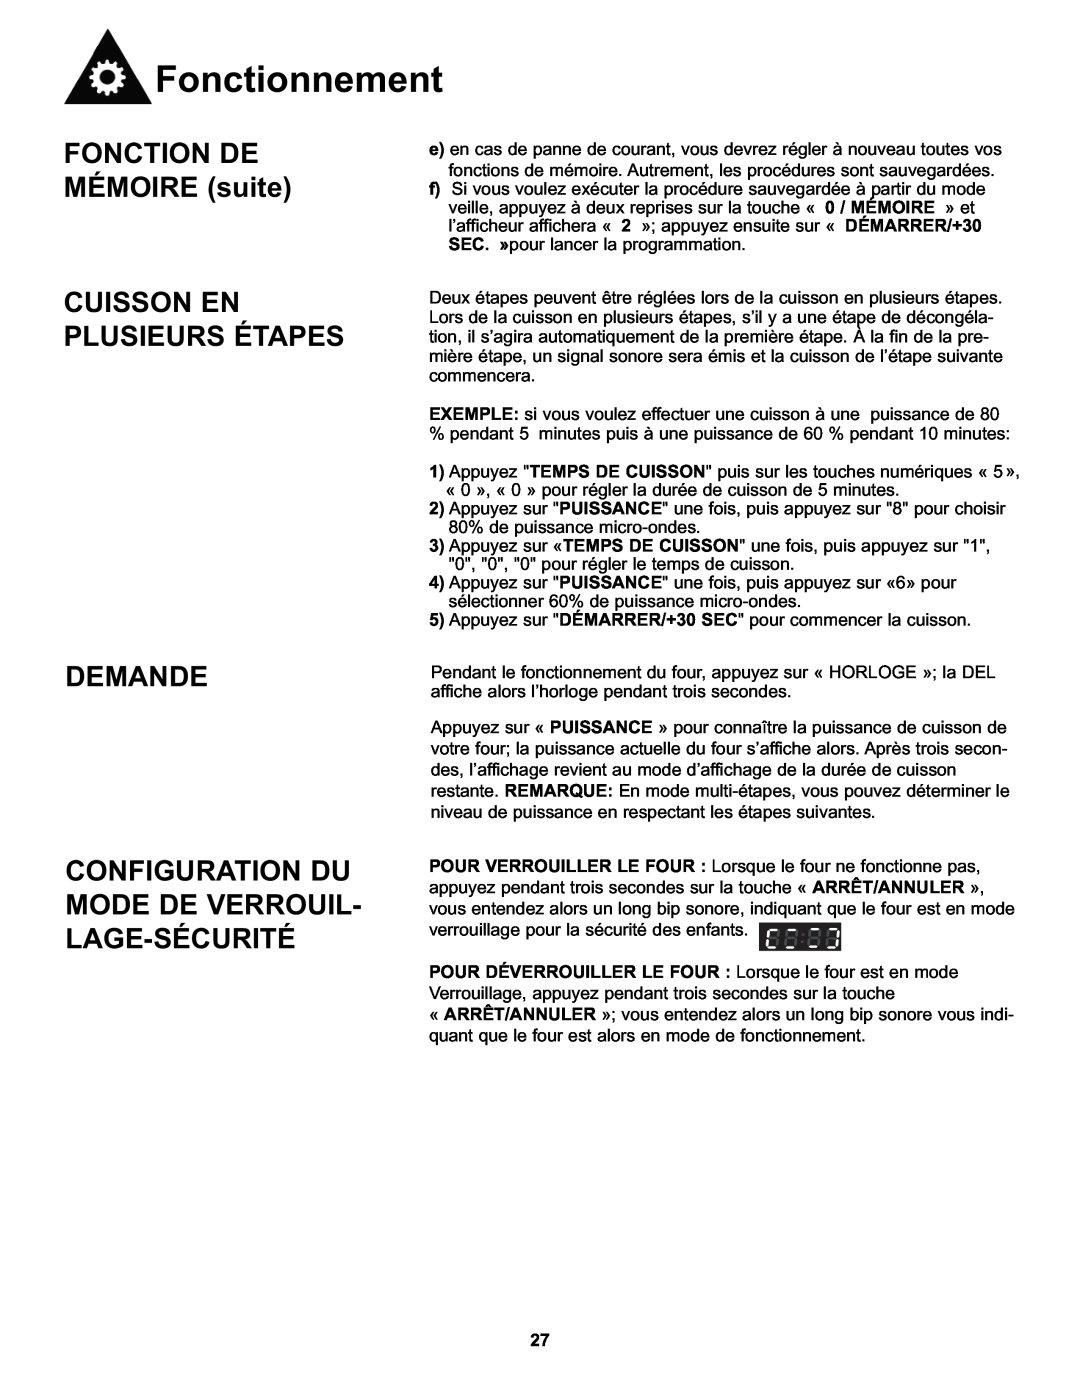 Danby DMW111KWDB manual FONCTION DE MÉMOIRE suite, Cuisson En Plusieurs Étapes Demande, Fonctionnement 